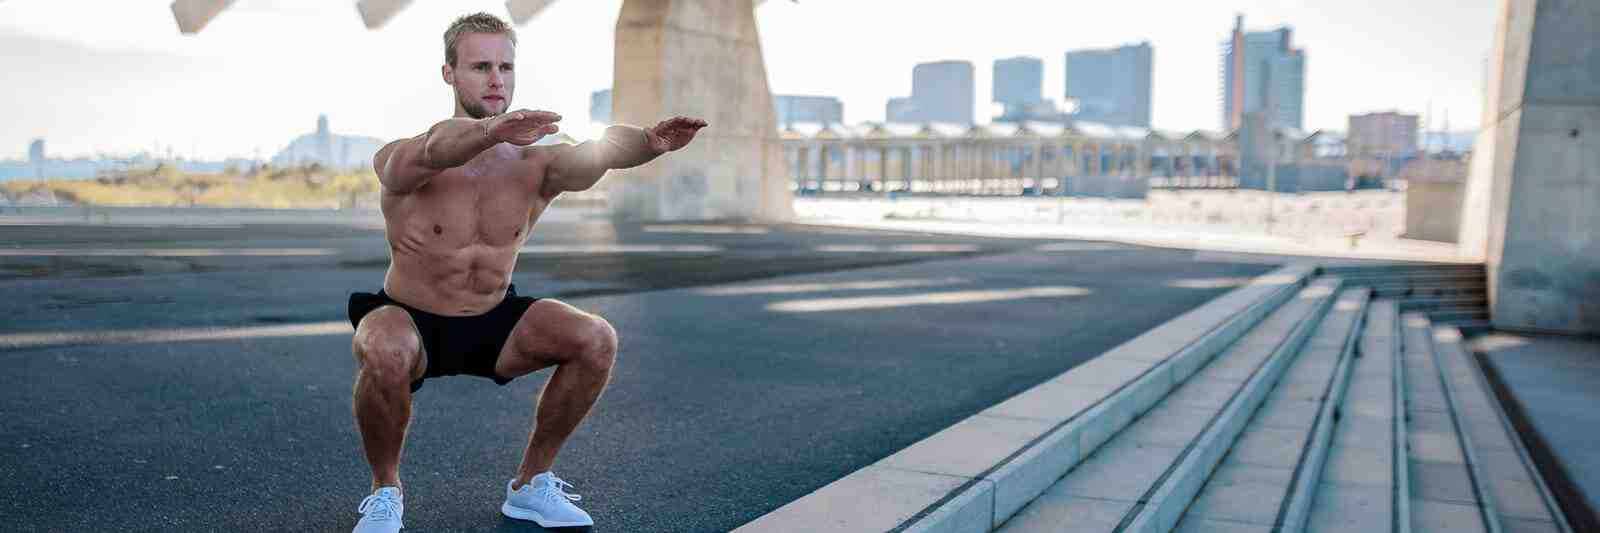 Courir 30 minutes par jour vous fait-il perdre du poids?